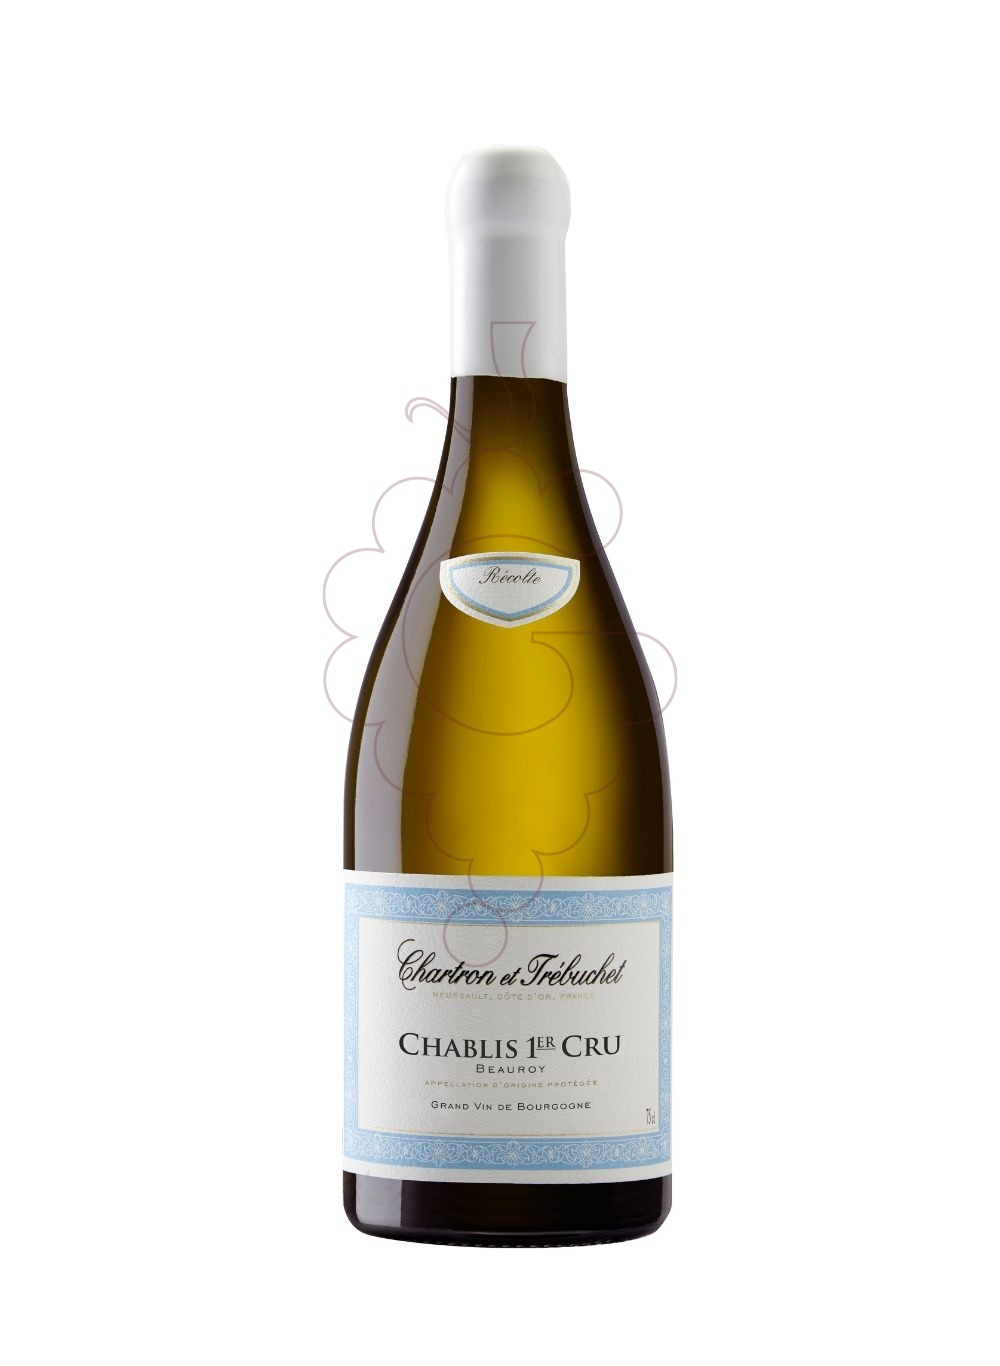 Foto Chartron et Trebuchet Chablis 1er Cru Beauroy vi blanc